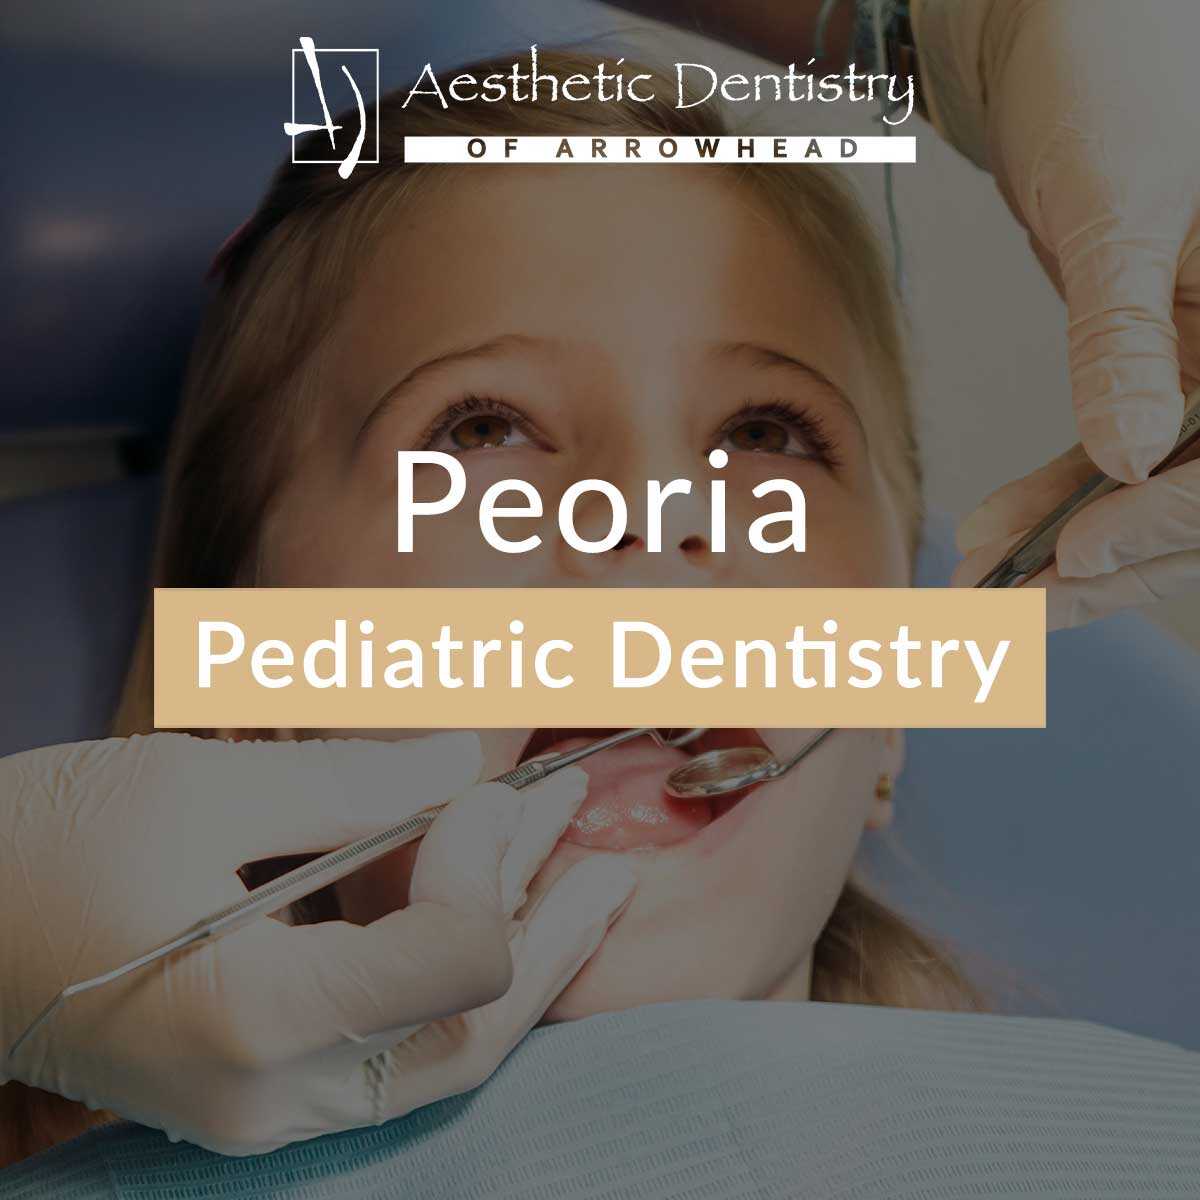 Peoria Pediatric Dentistry featured image